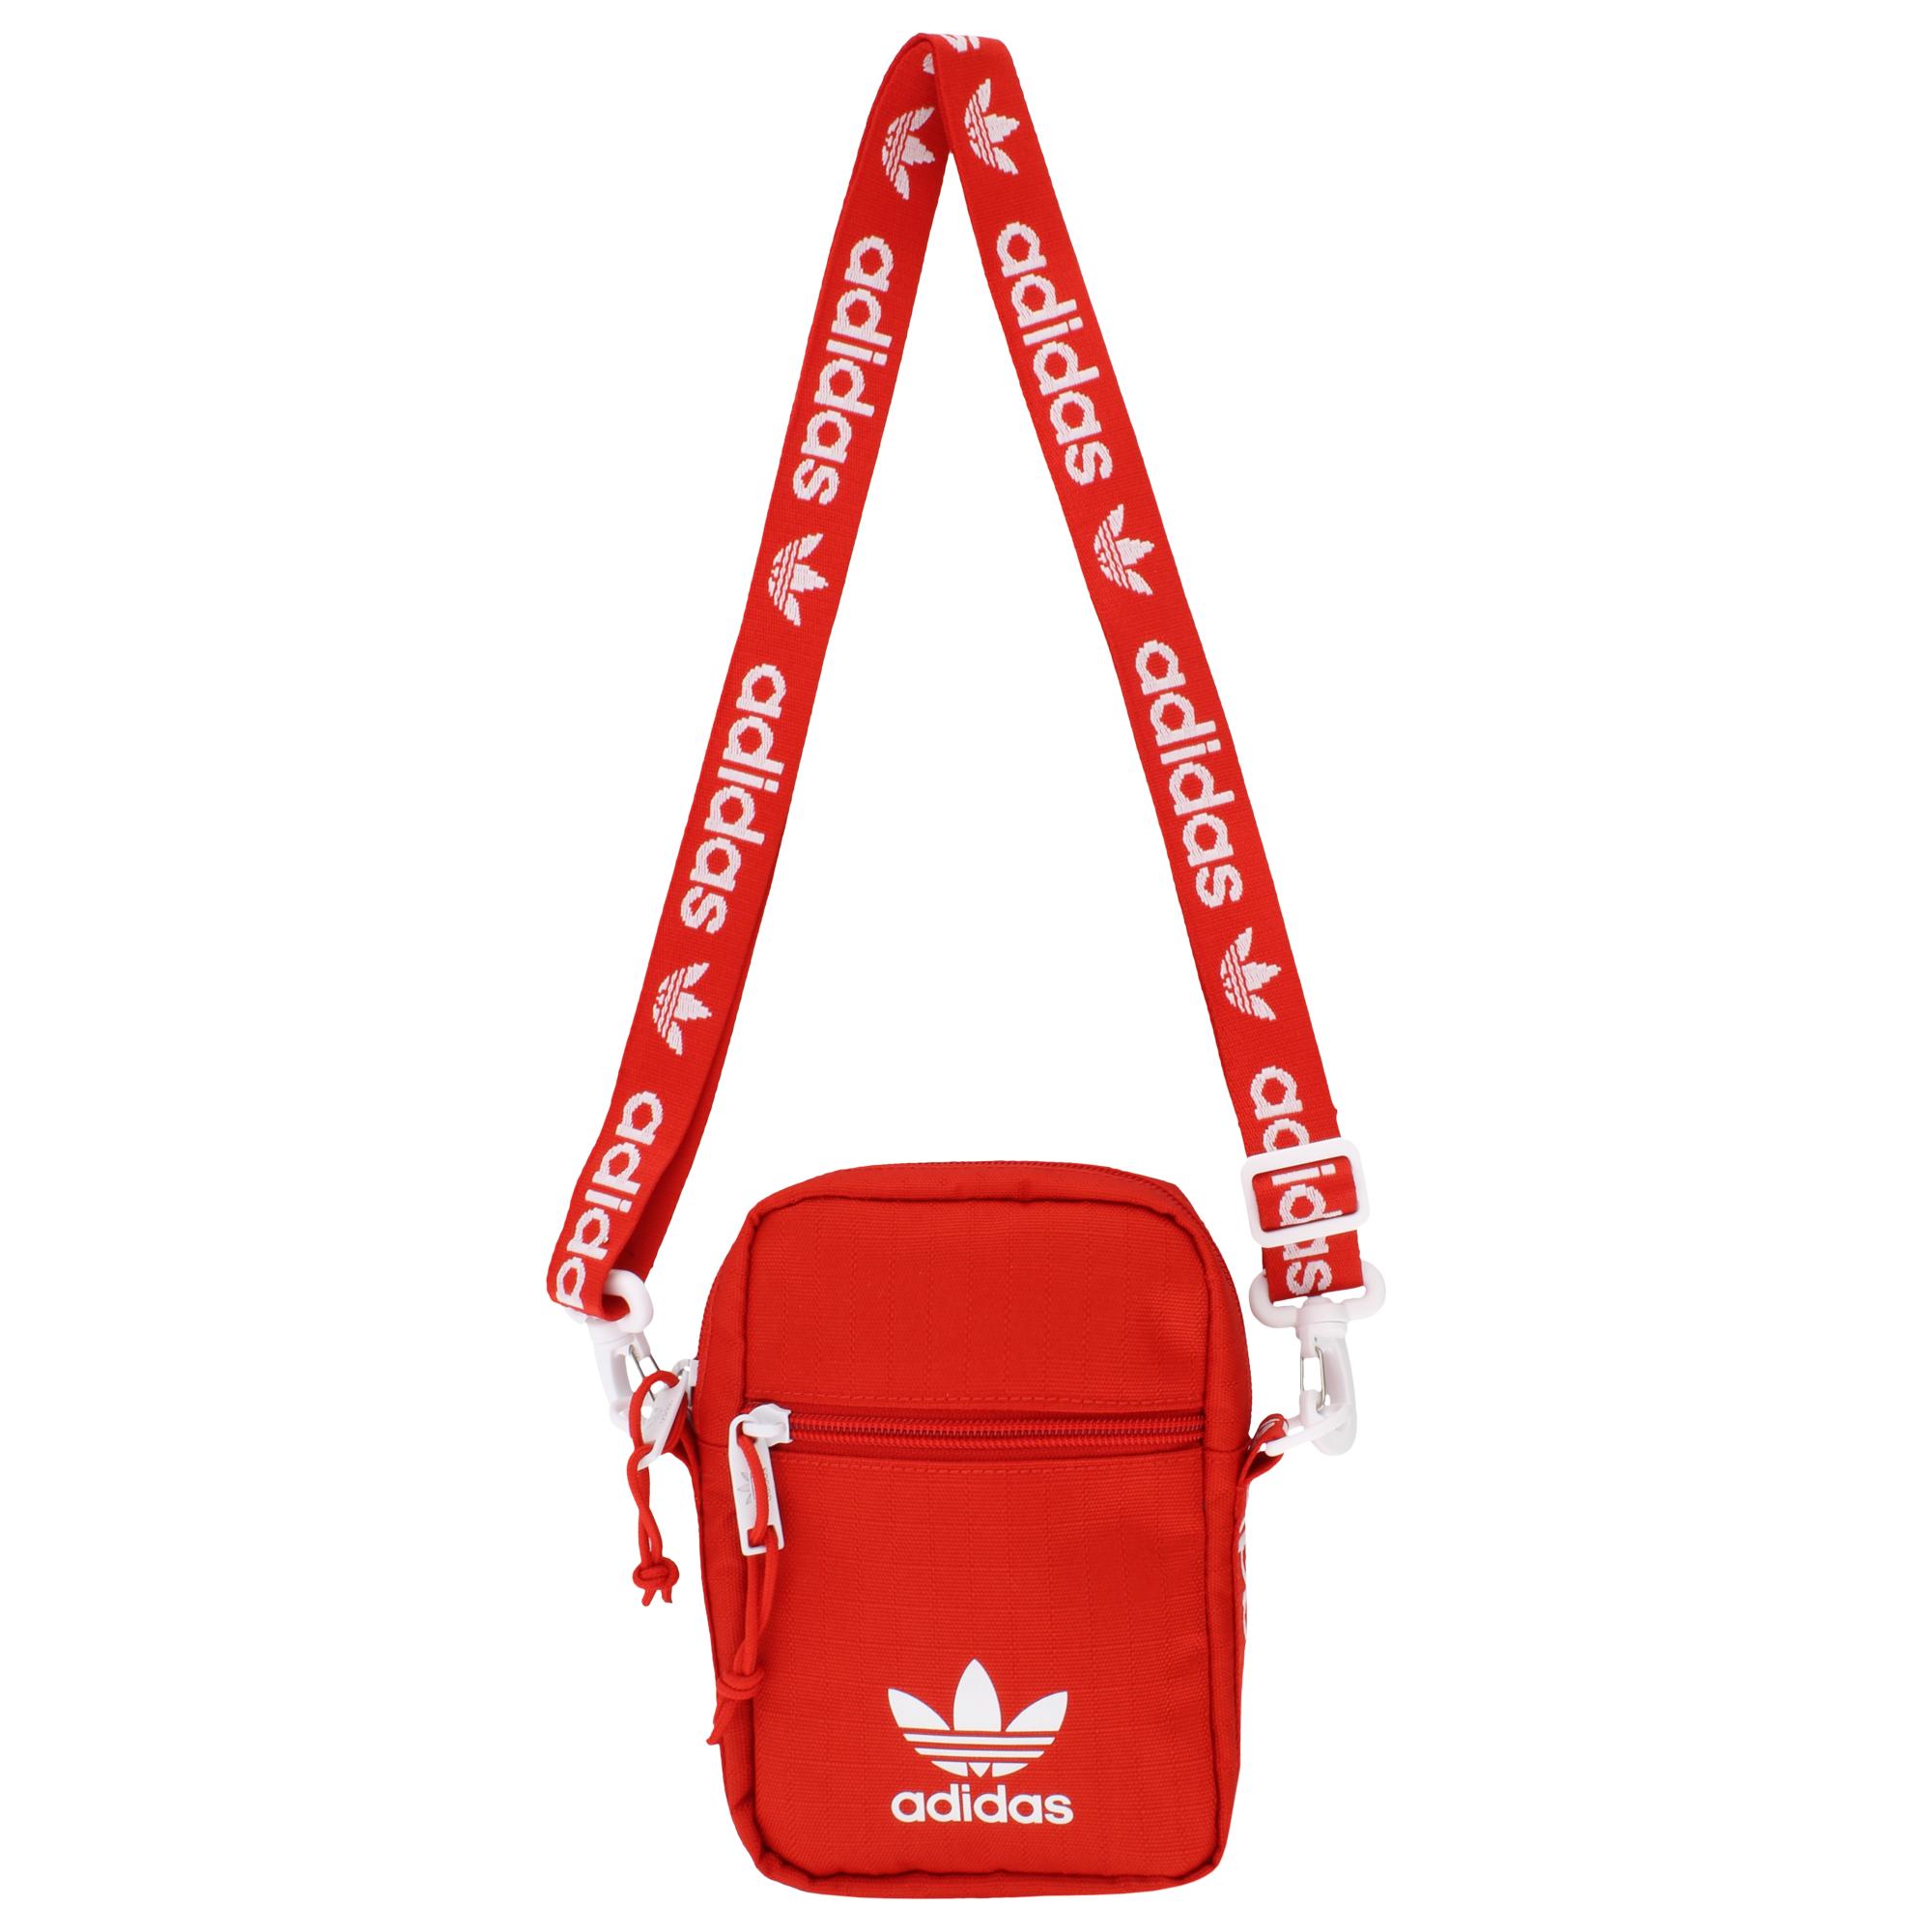 adidas red shoulder bag